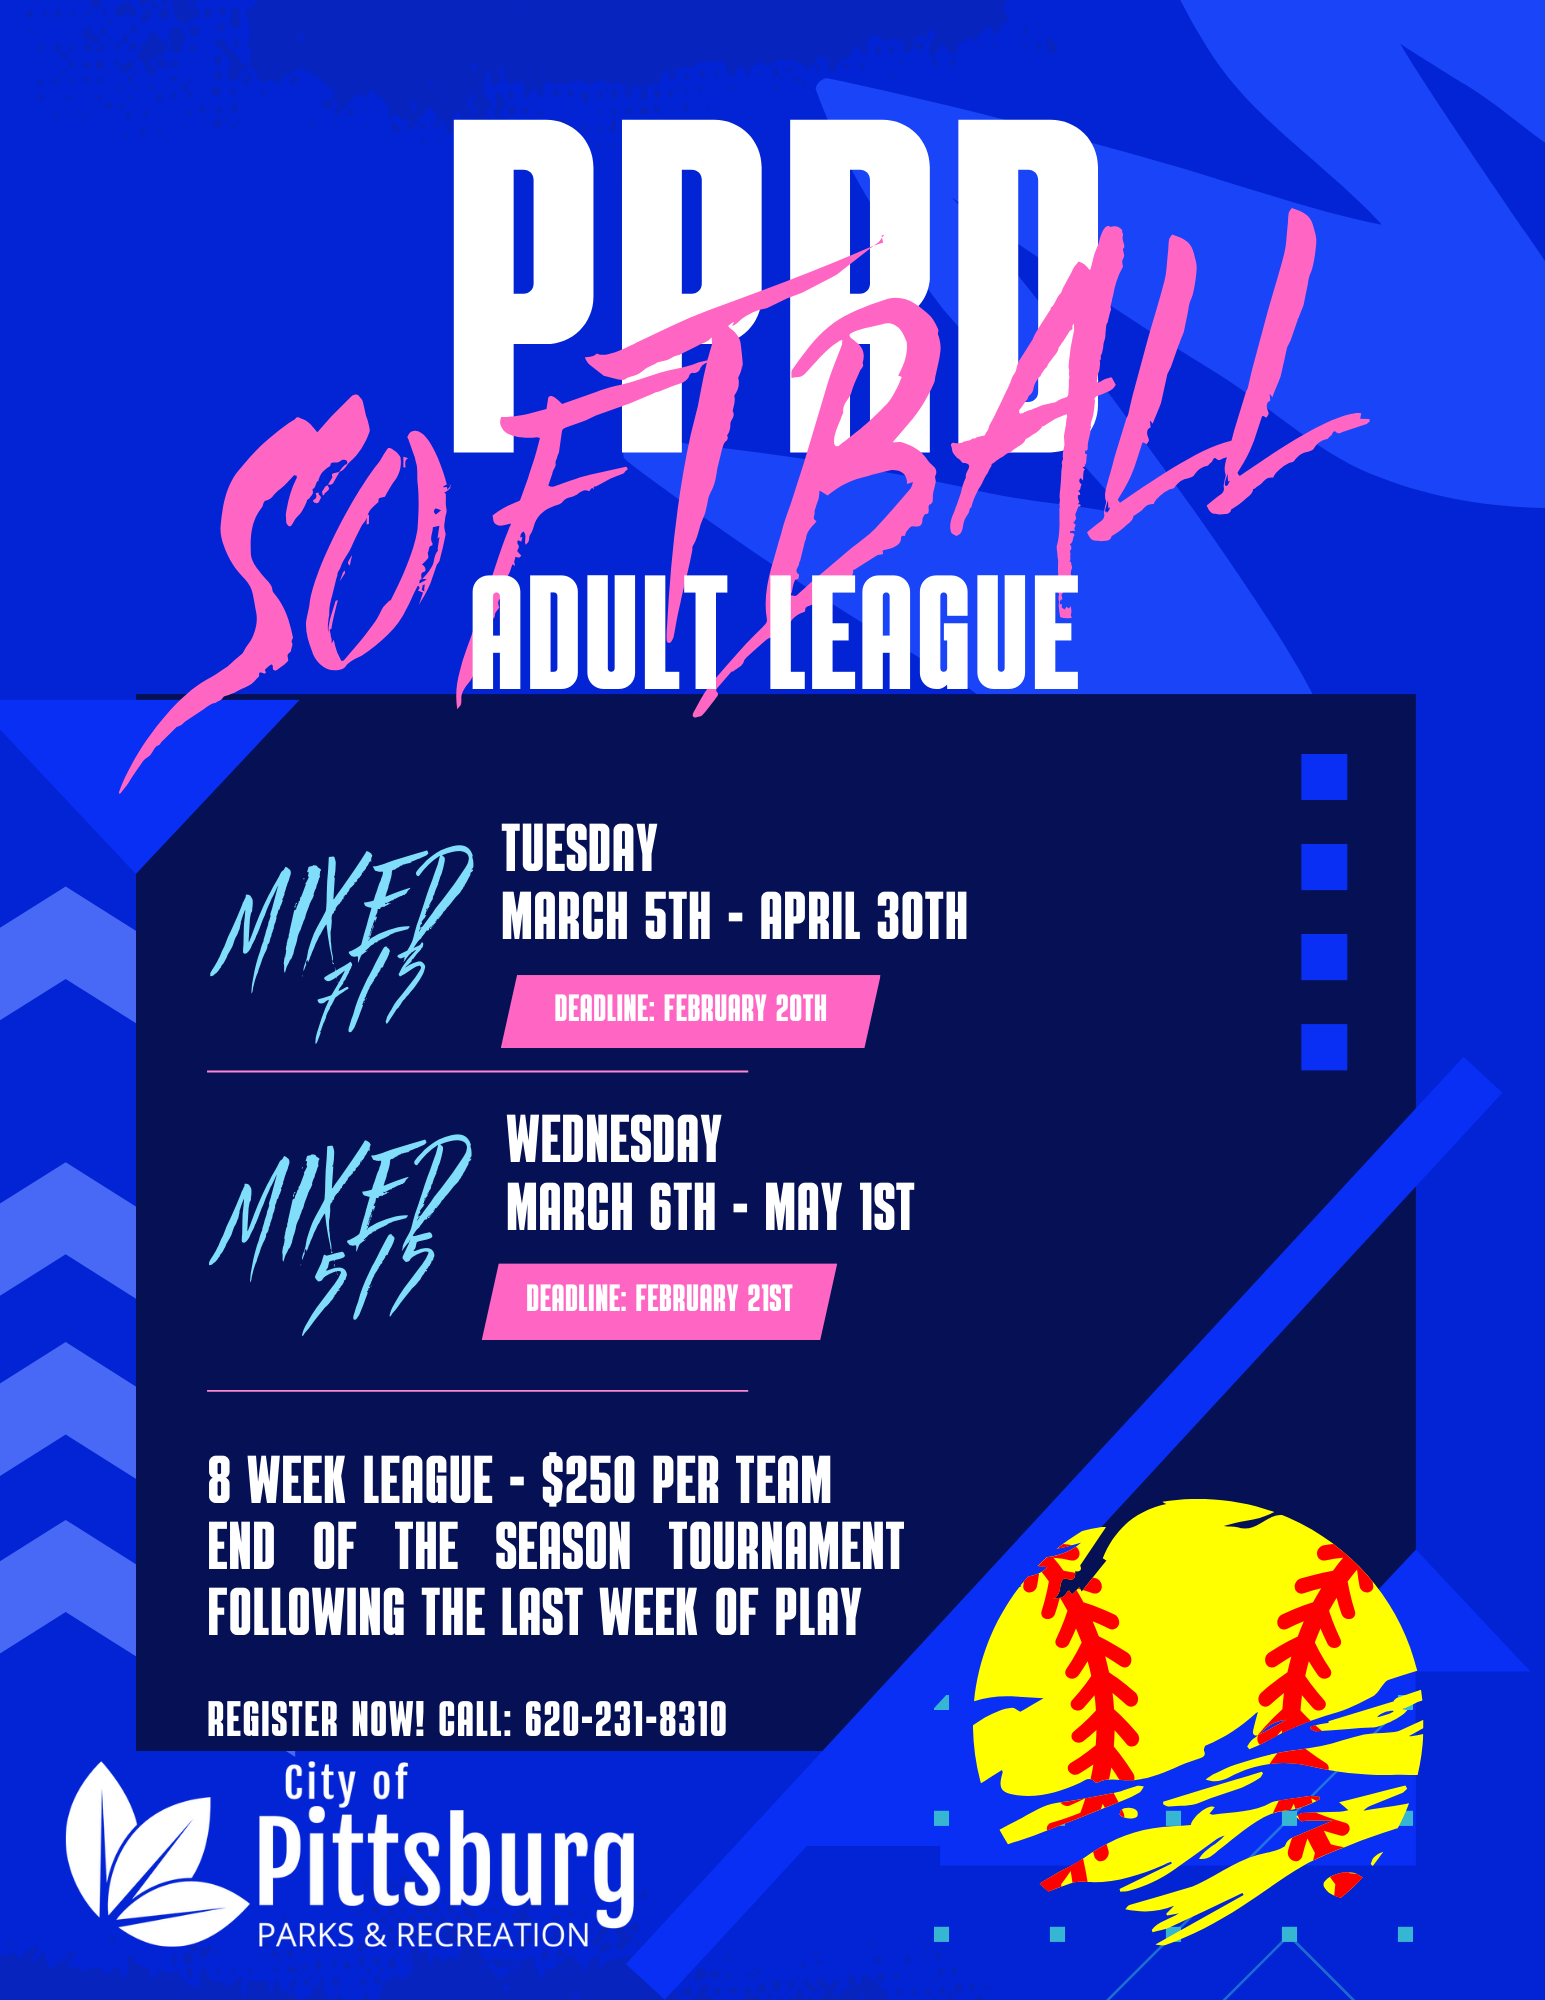 PPRD Softball Adult League